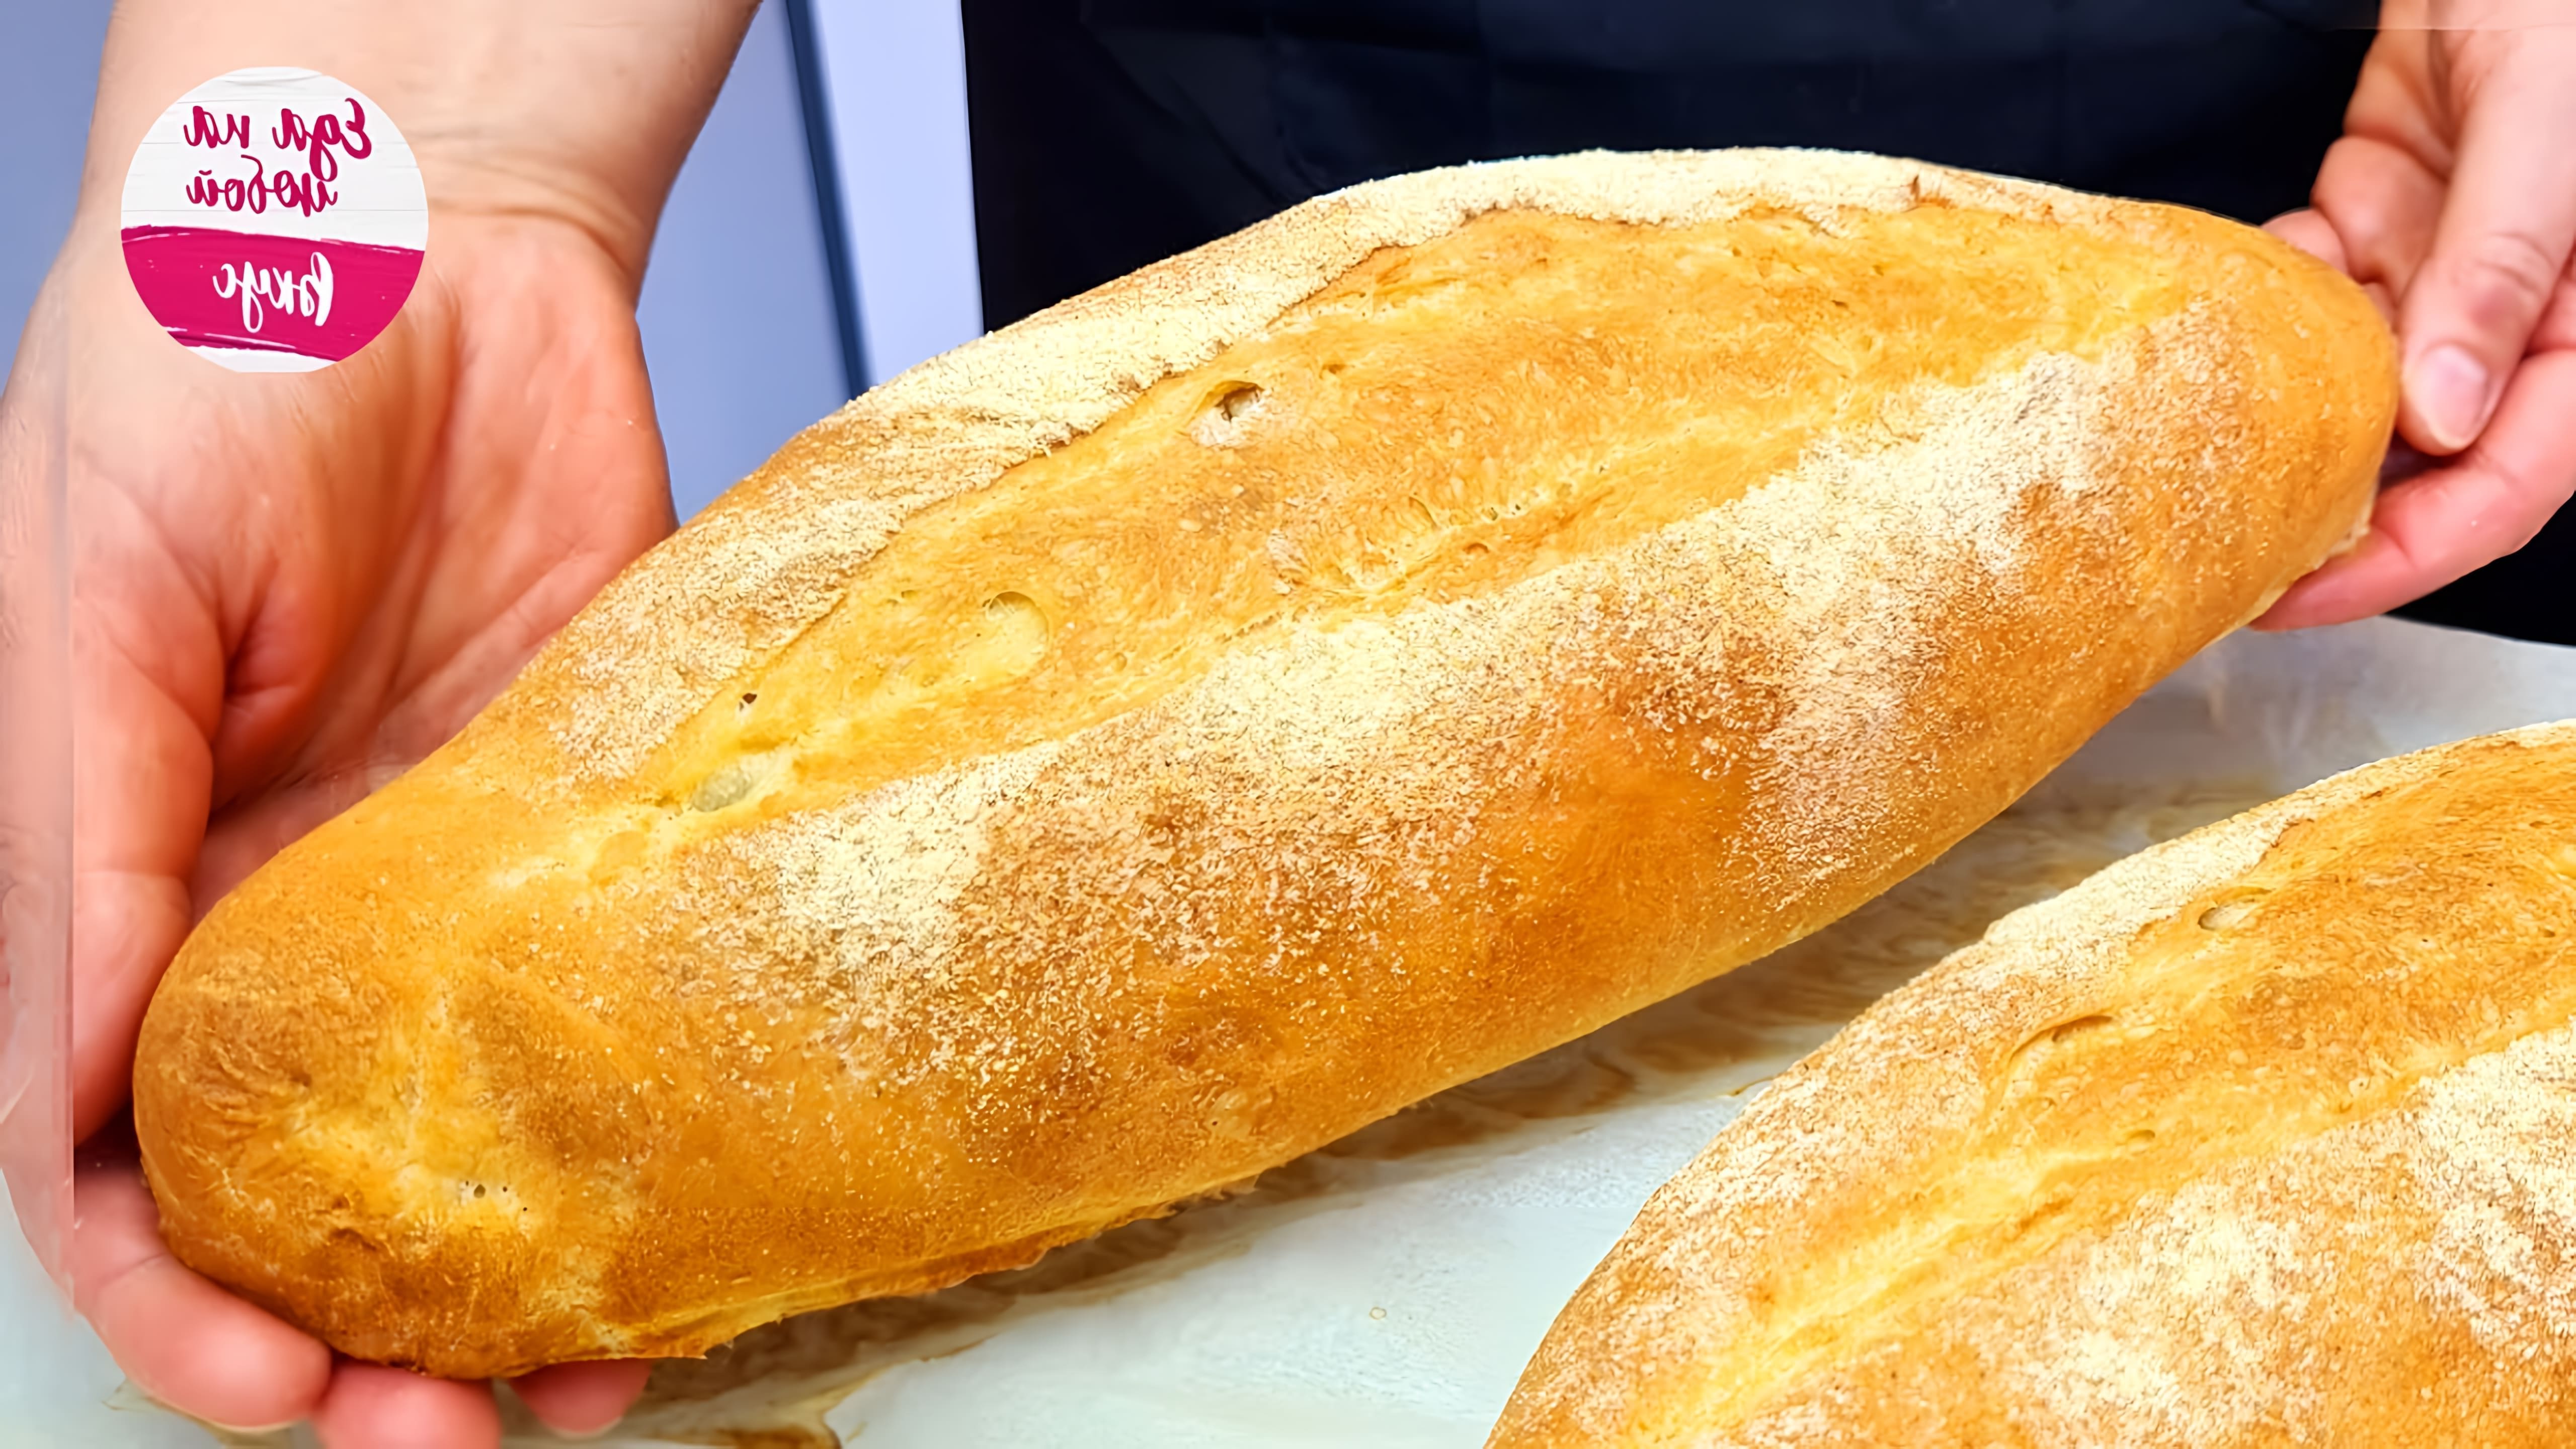 В этом видео Анастасия показывает, как приготовить турецкий хлеб "Инк"